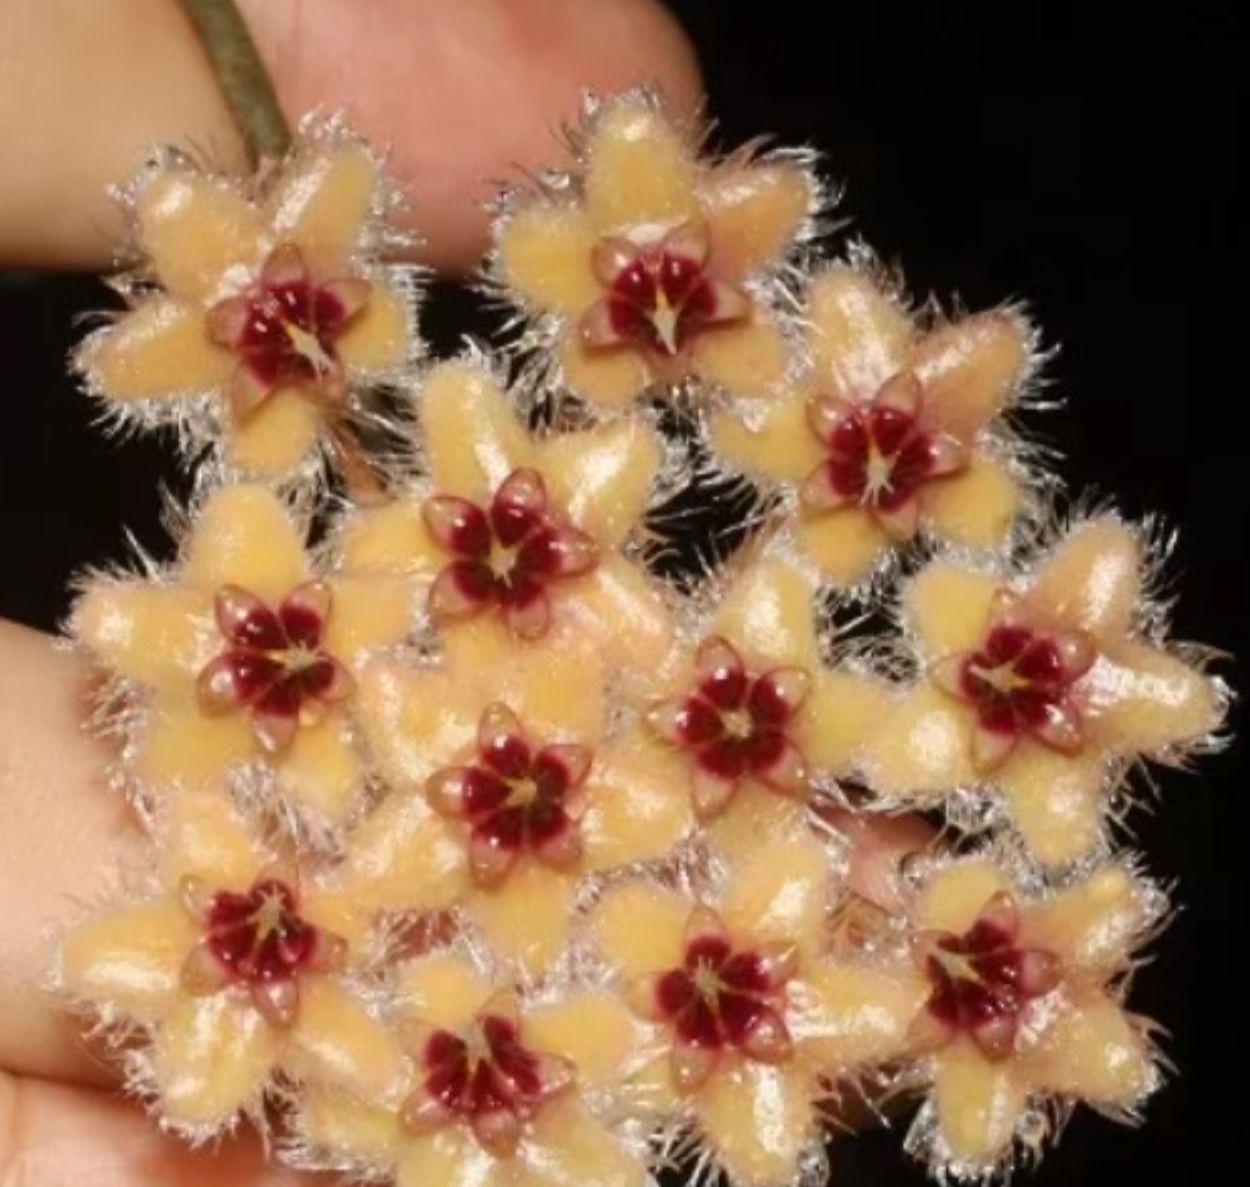 Hoya Caudata gold - kokulu mum çiçeği 2 -4 yaprak toprak da köklü ve sürgünlü (kod:new134a)